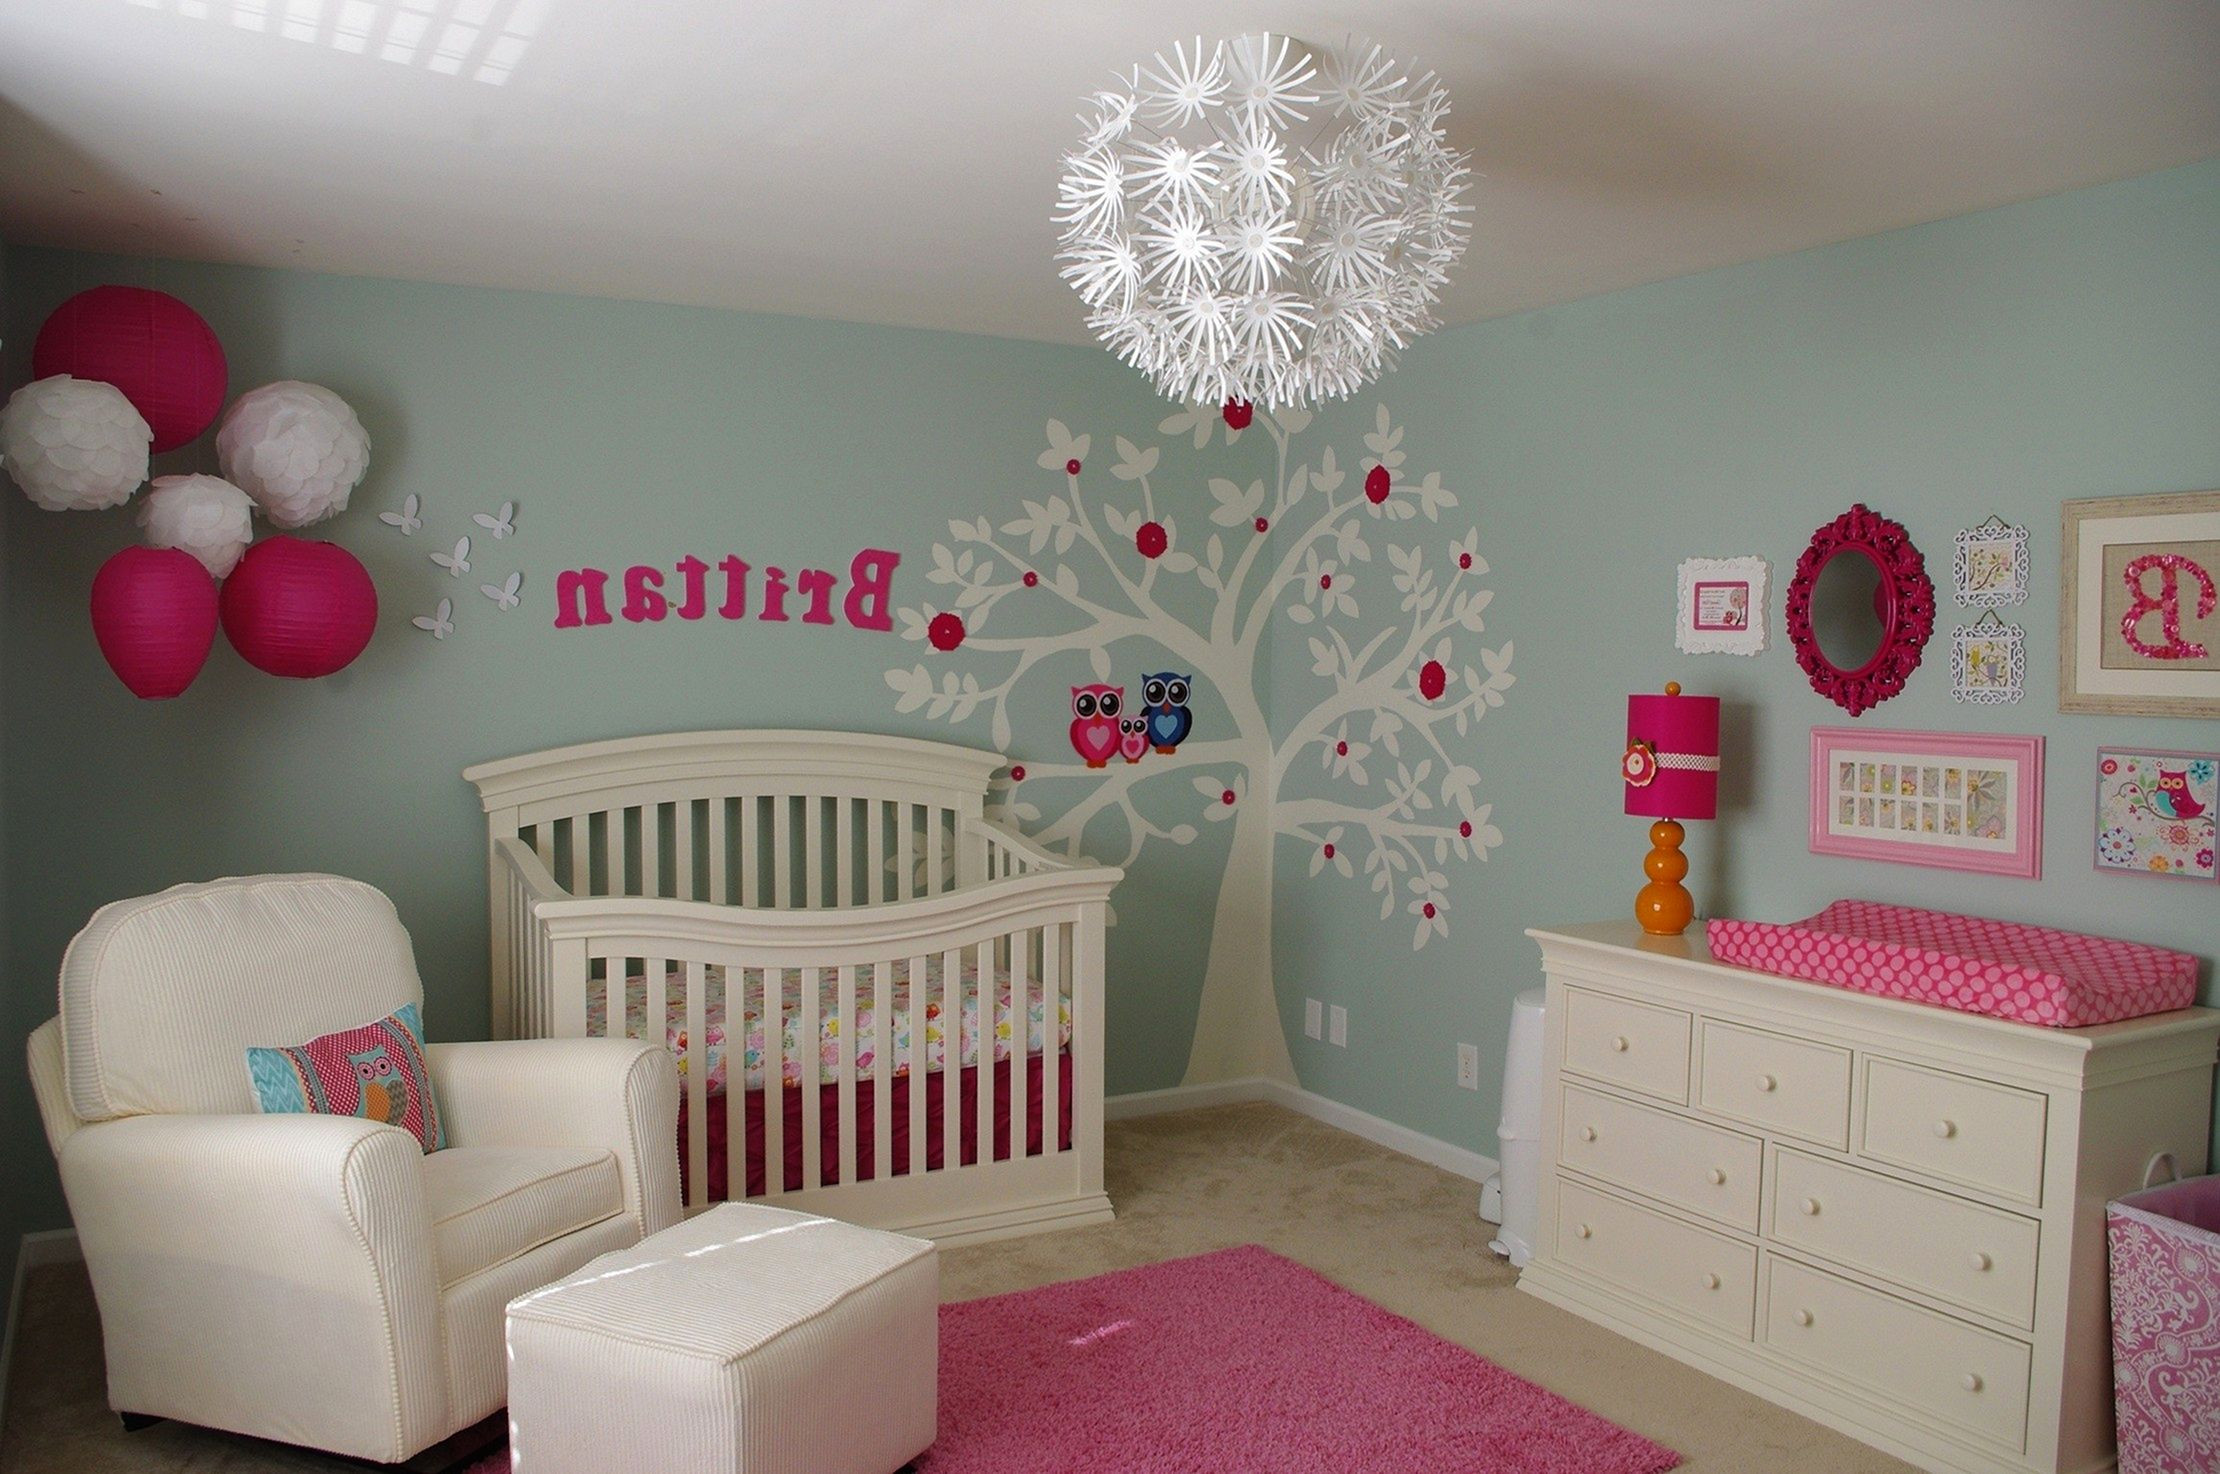 Diy Baby Room Decor Ideas
 DIY Baby Room Decor Ideas For Girls DIY Baby Room Decor